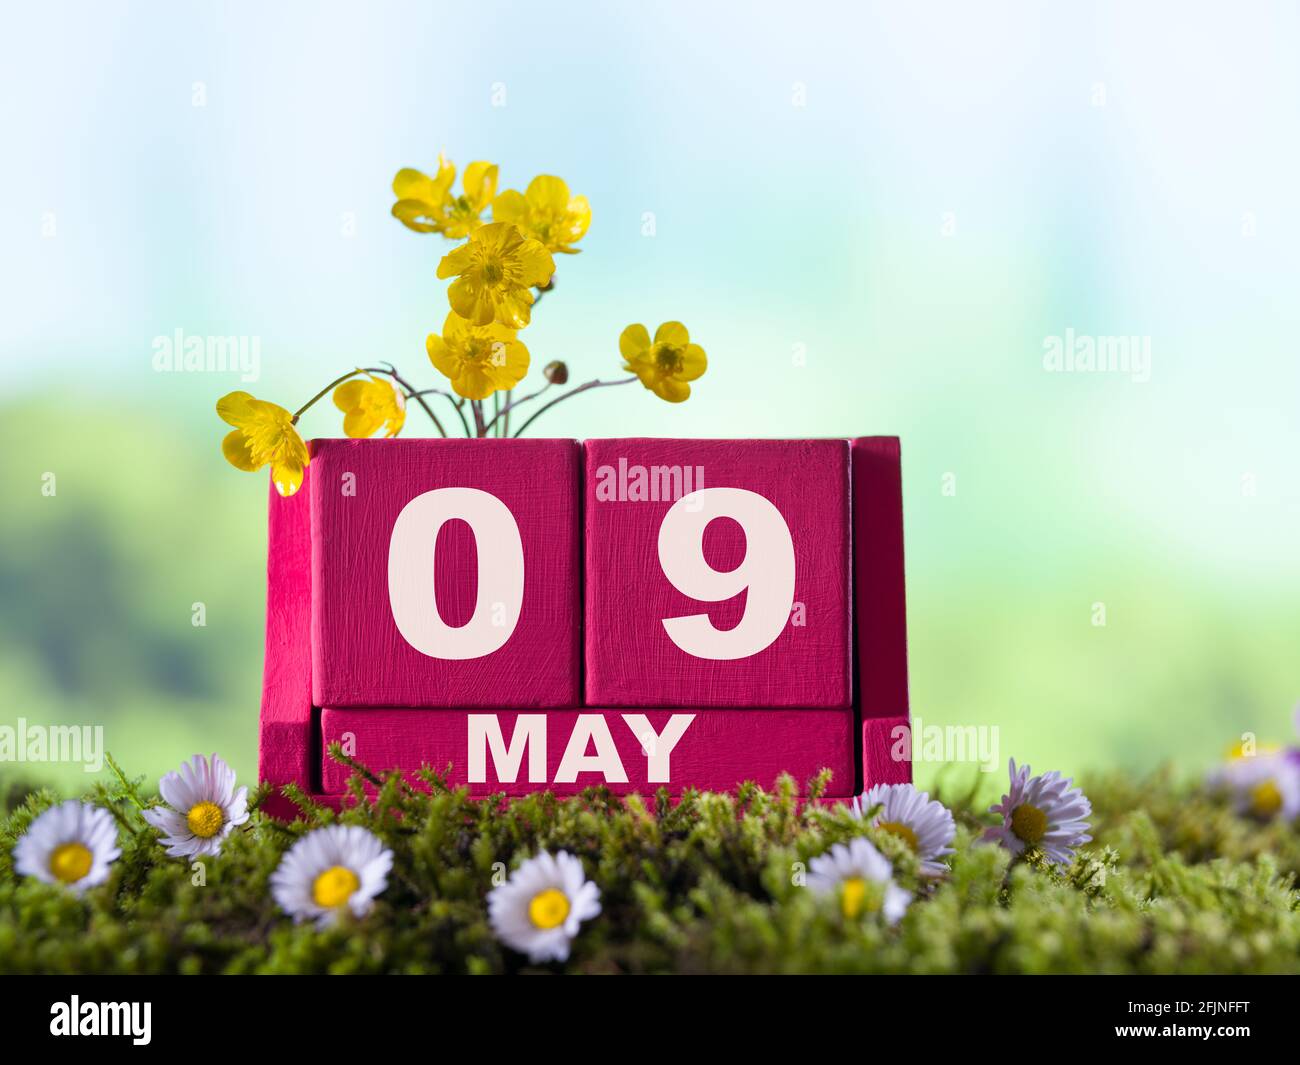 09 mai 2020 Fête des mères. Date du 09 mai avec fleurs de printemps sur calendrier en bois rouge Banque D'Images